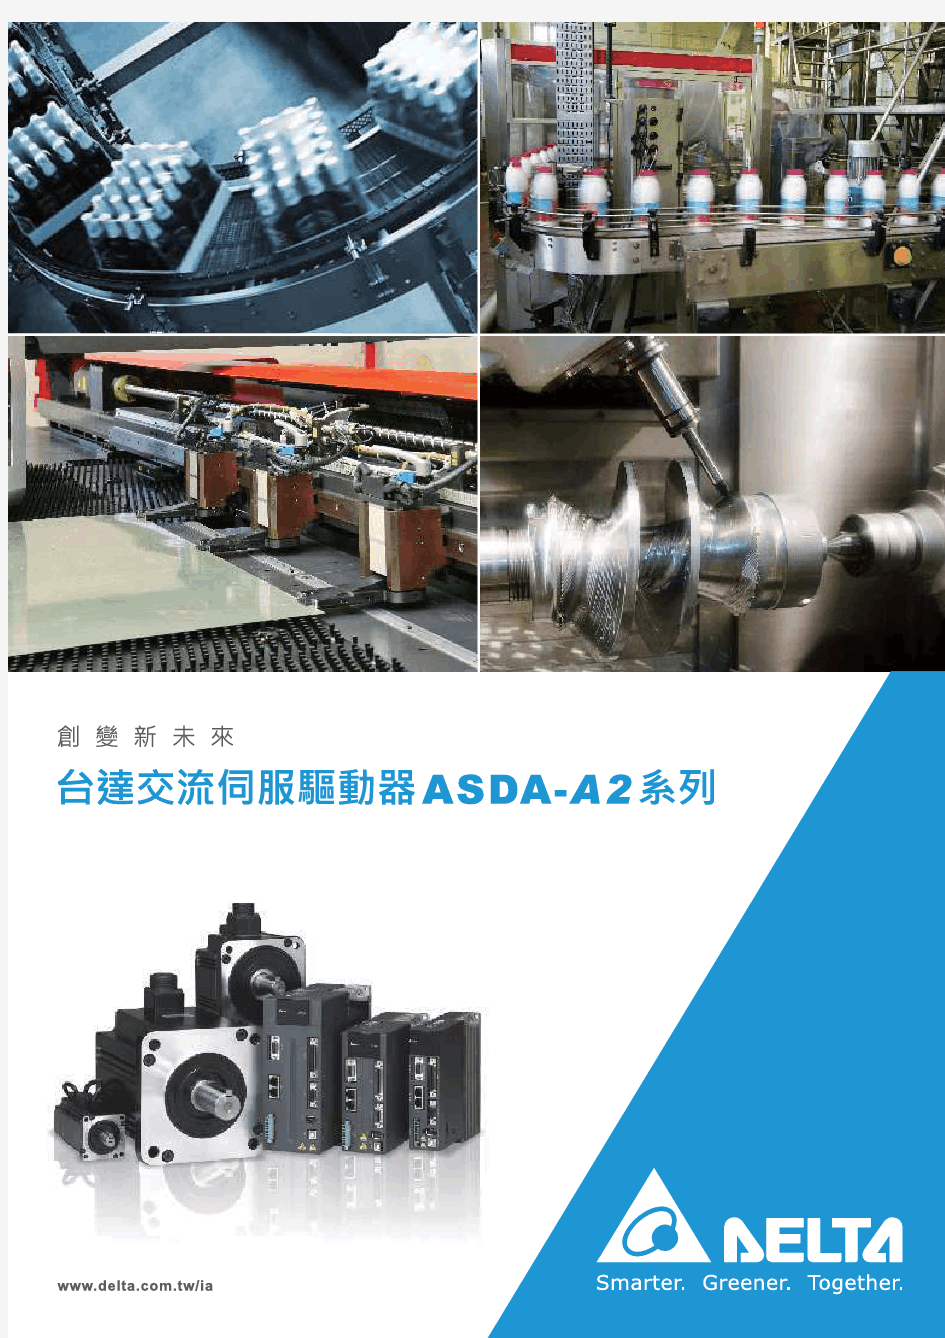 ASDA-A2系列伺服驱动说明书